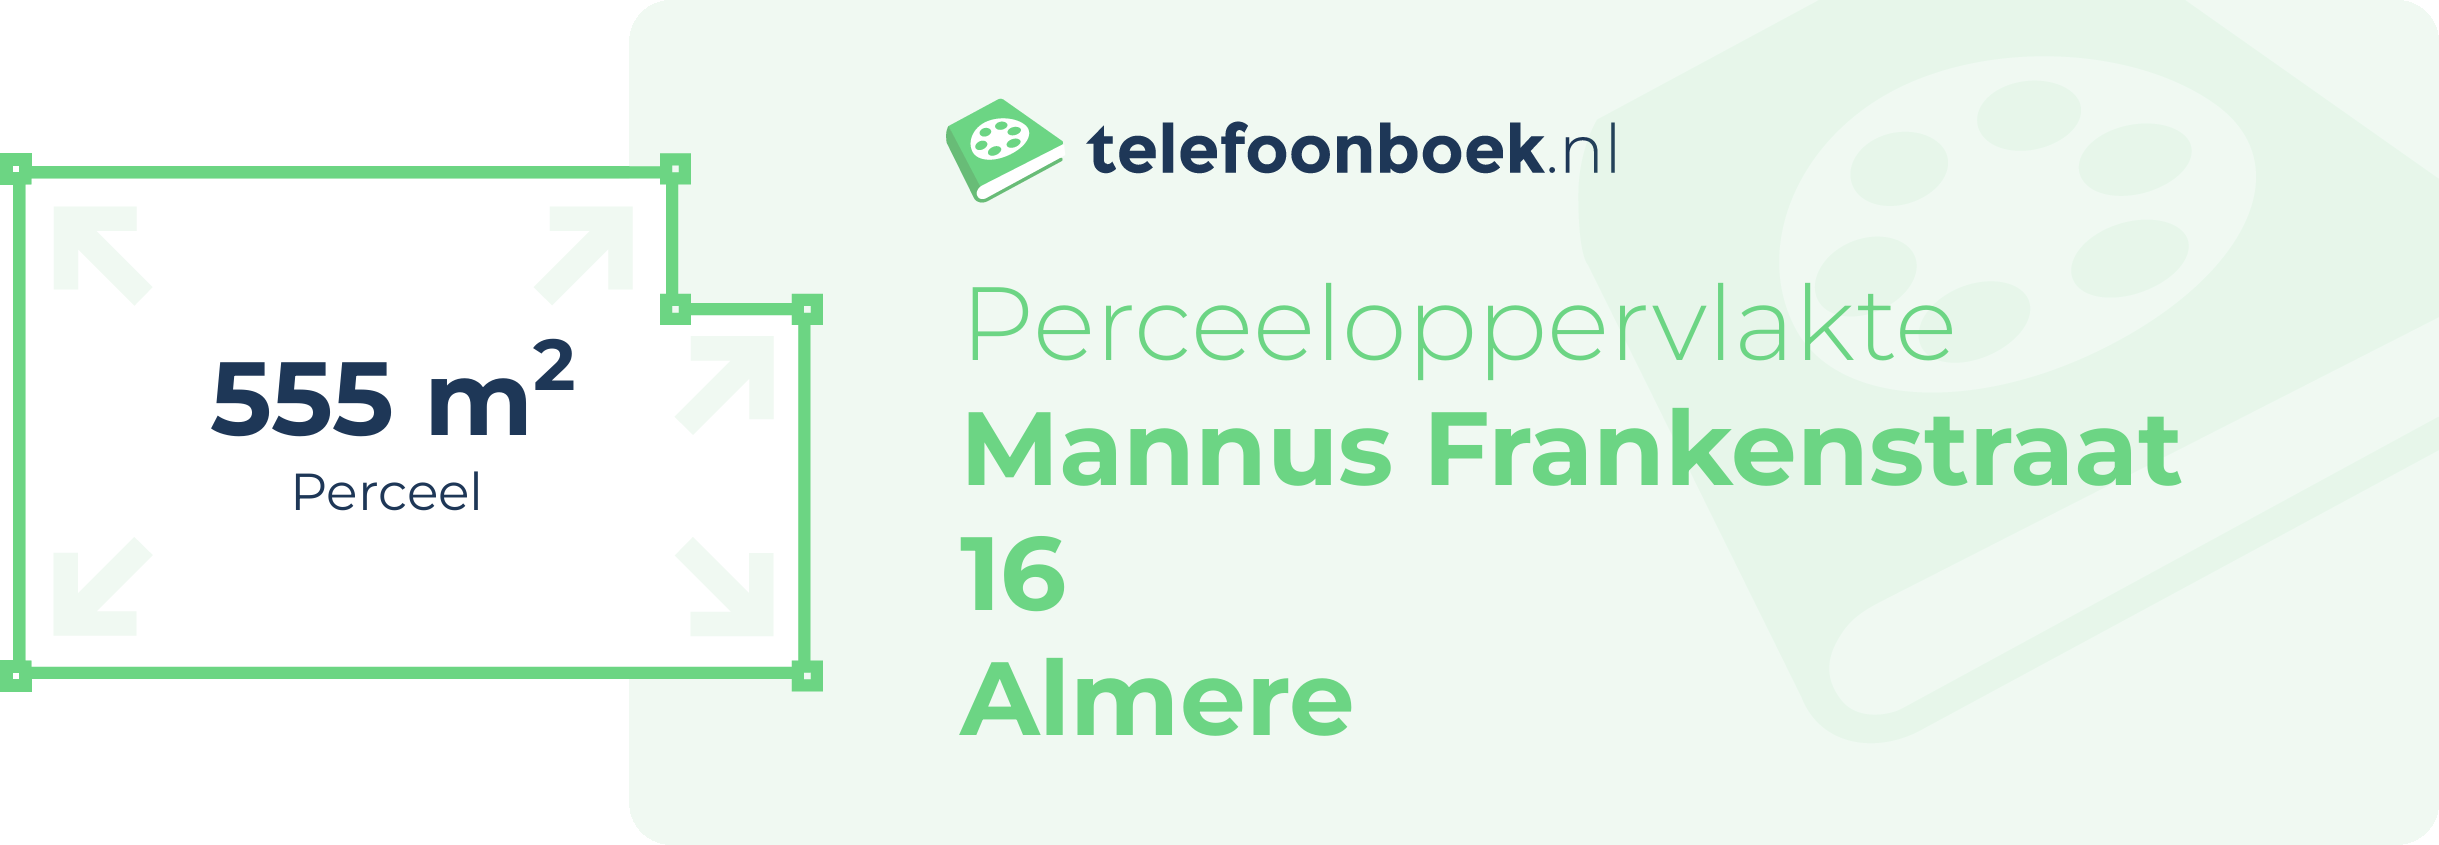 Perceeloppervlakte Mannus Frankenstraat 16 Almere